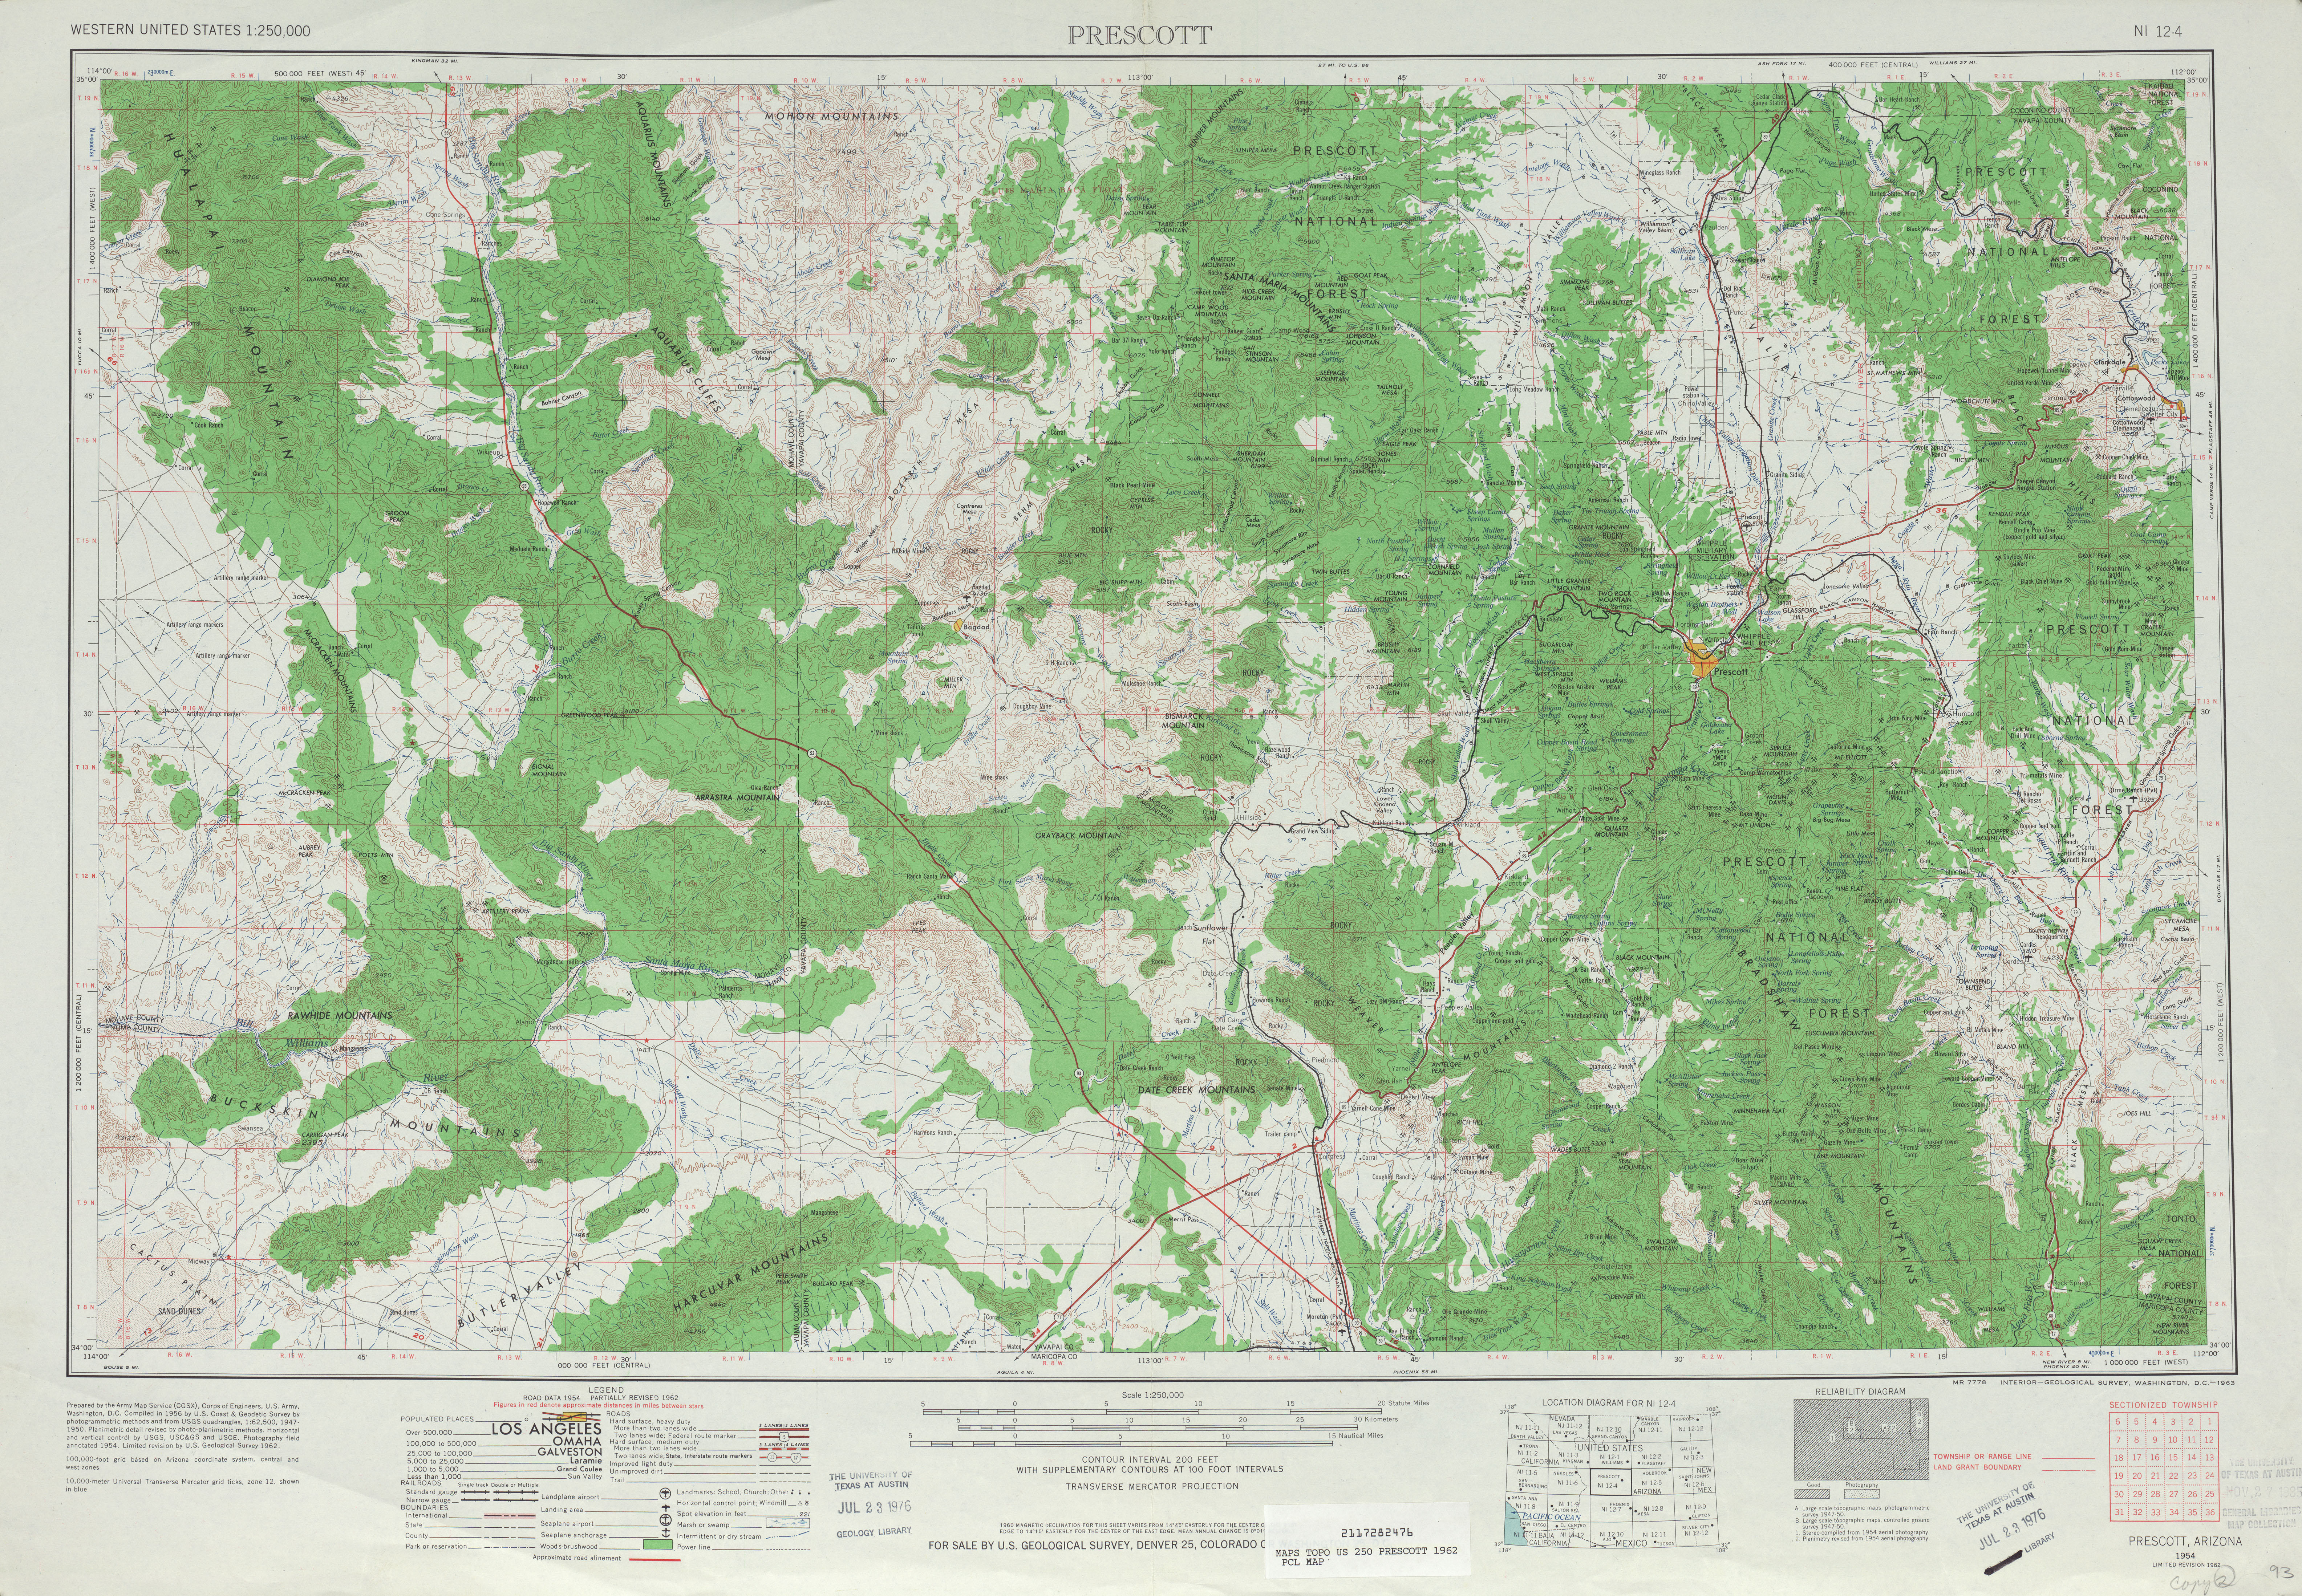 Hoja Prescott del Mapa Topográfico de los Estados Unidos 1962